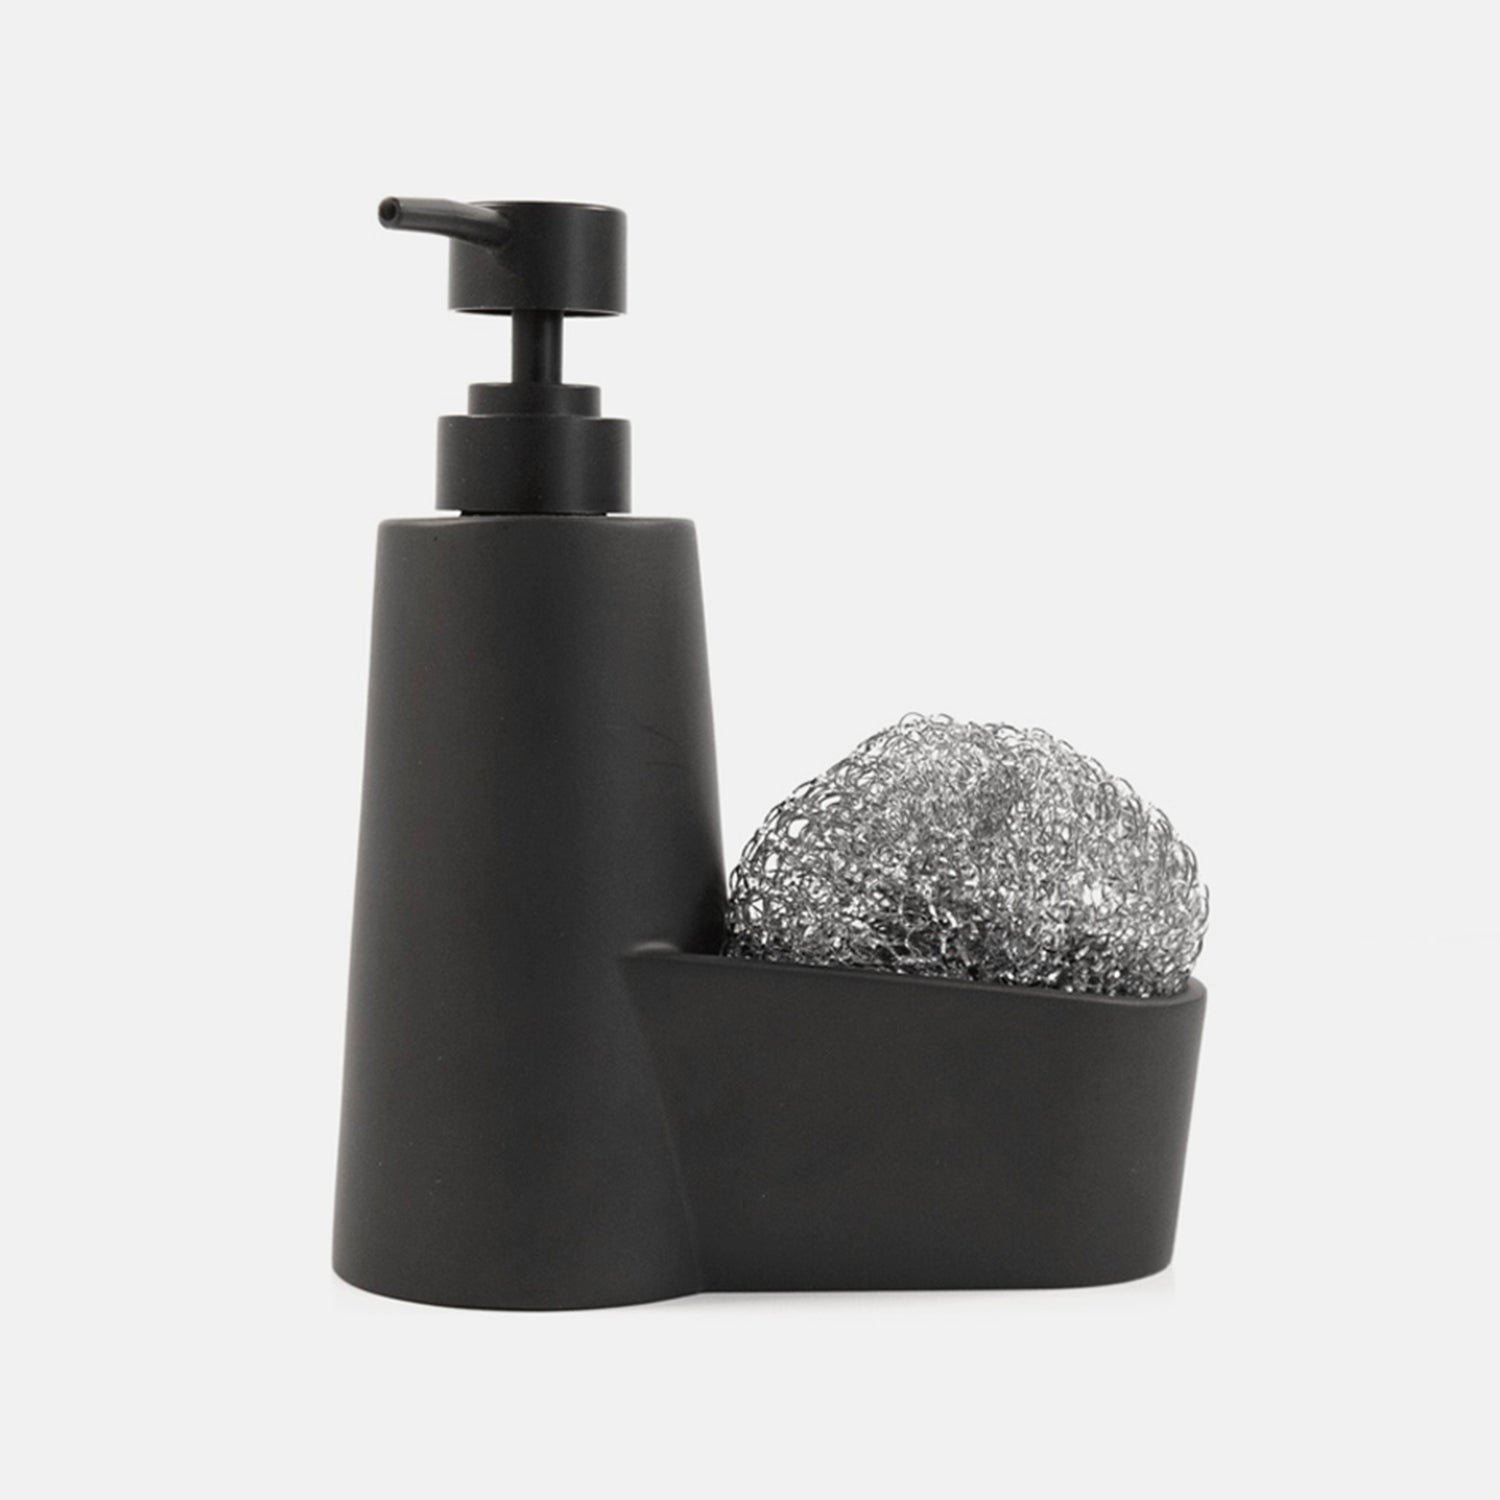 https://mmep.store/cdn/shop/products/Matte-Soap-Dispenser-with-Sponge-Holder-3_2000x.jpg?v=1666229761